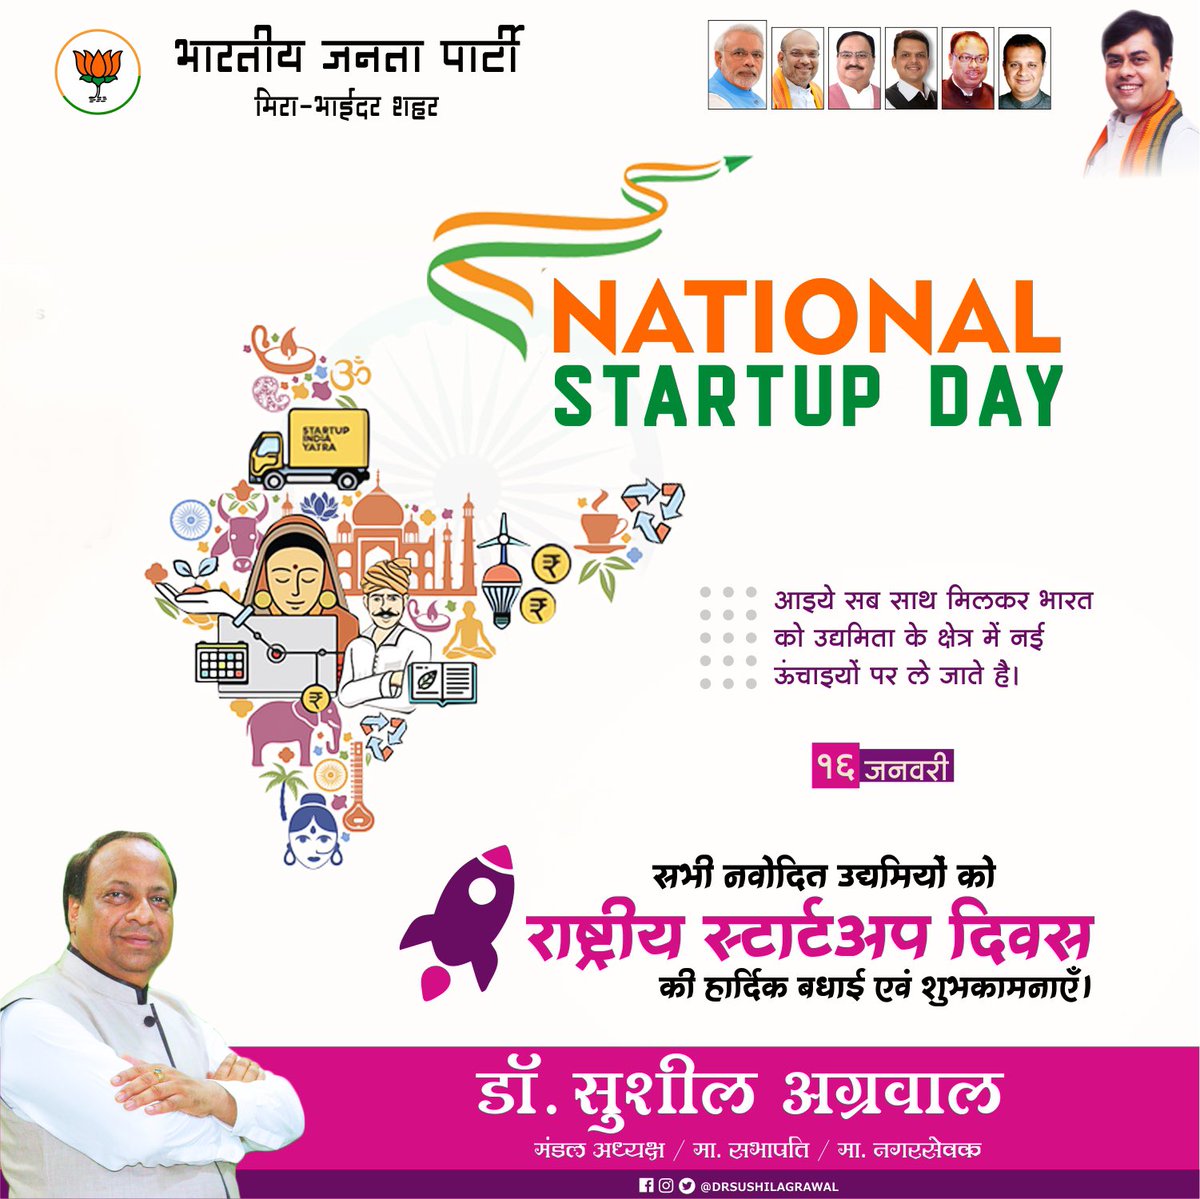 सभी नवोदित उद्यमियों को राष्ट्रीय स्टार्टअप दिवस की हार्दिक बधाई एवं शुभकामनाएँ।

#NationalStartupDay #IndianStartup #makeinindia #StartupDay #narendramodi